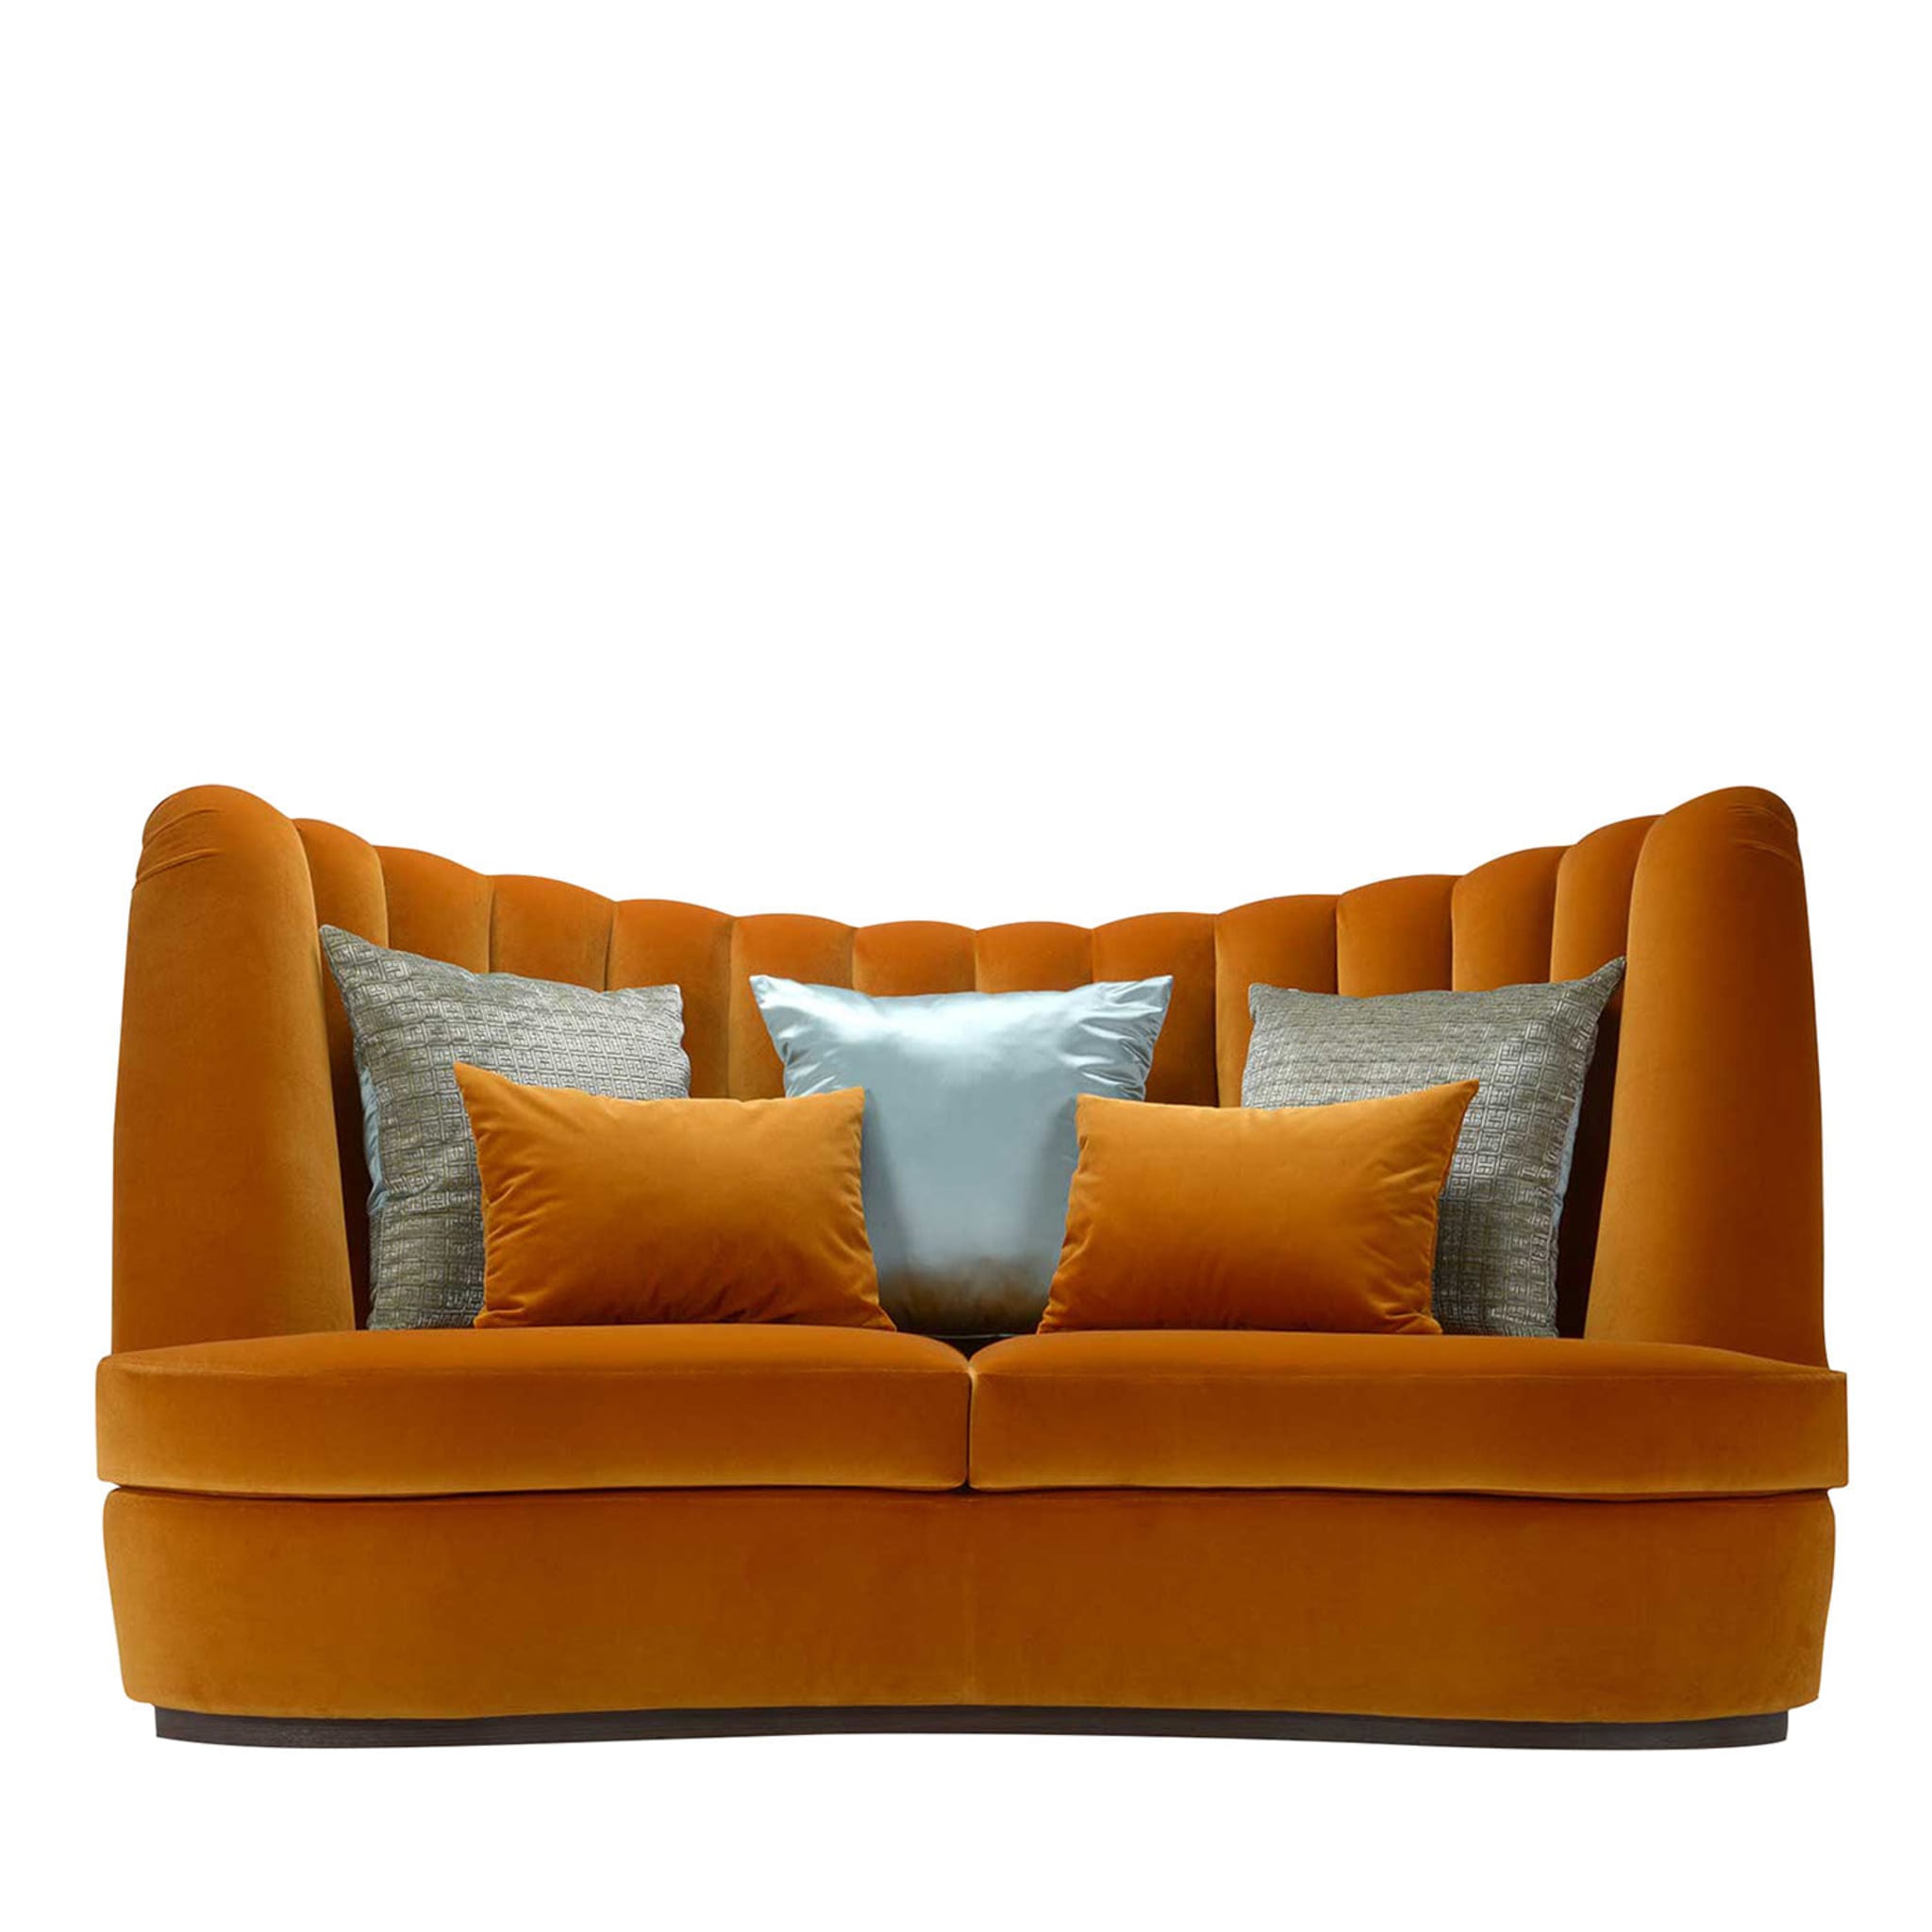 Thalia Saffron 3-Seater Sofa - Main view